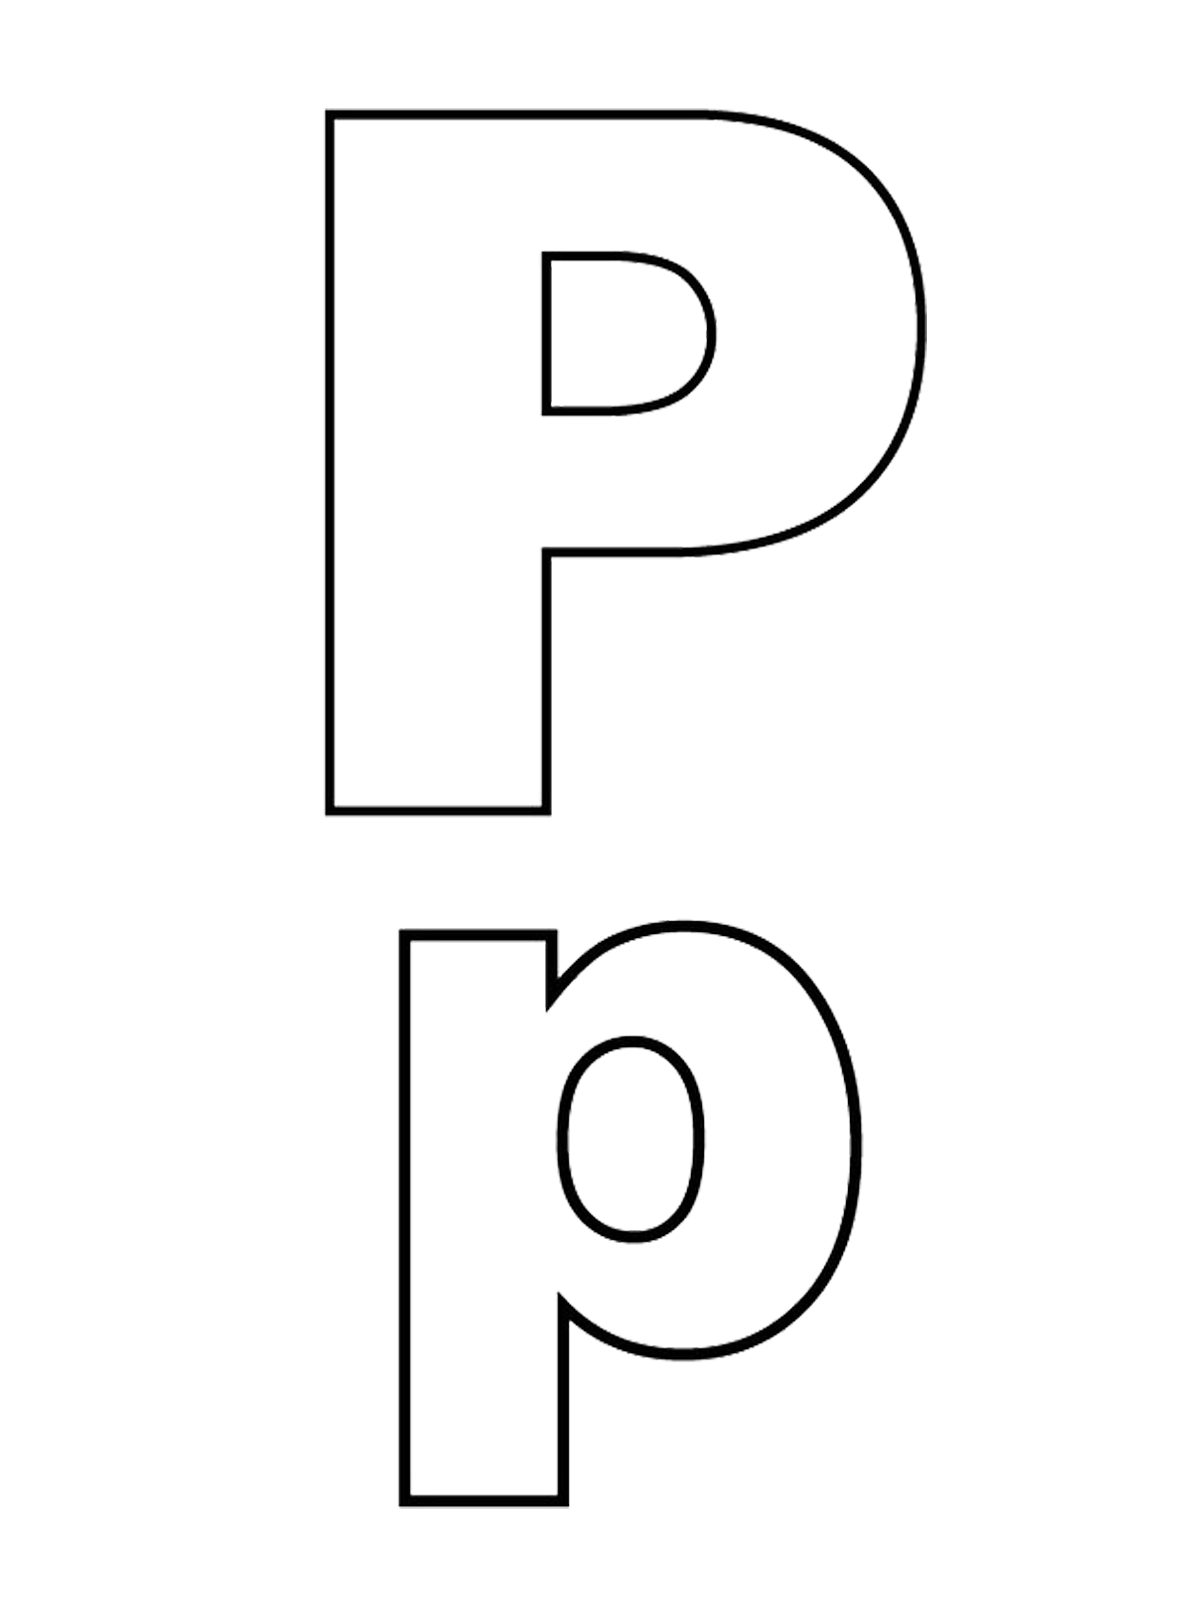 Lettere e numeri - Lettera P stampato maiuscolo e minuscolo